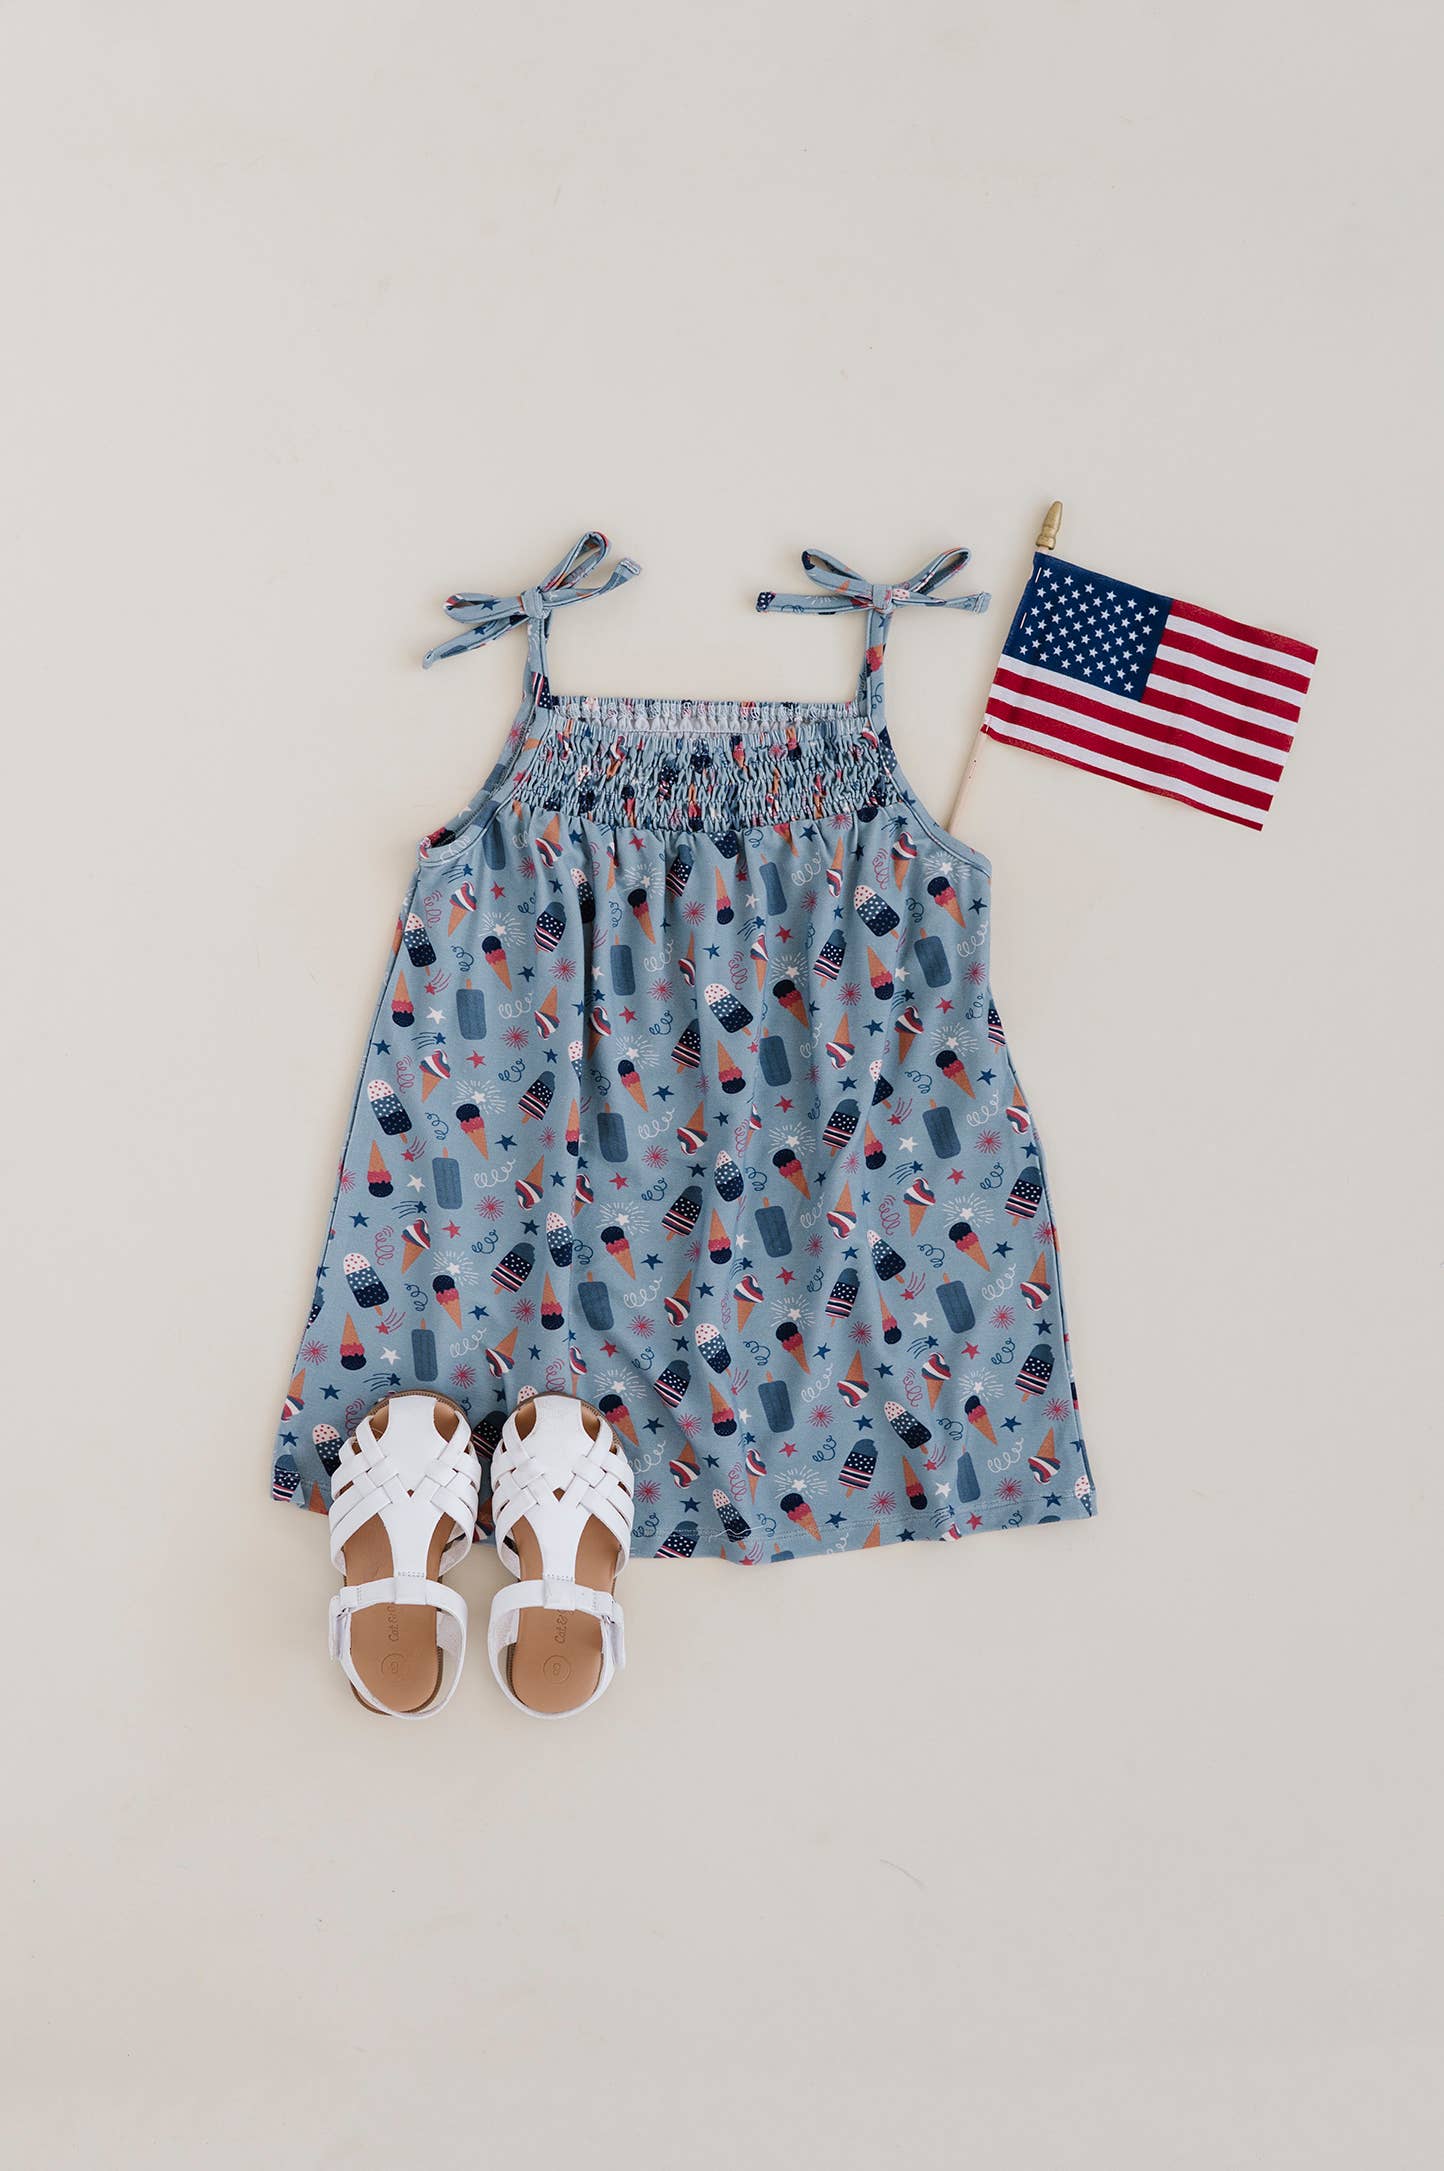 S24 Americana: Girl's Smocked Dress Fourth of July Treats